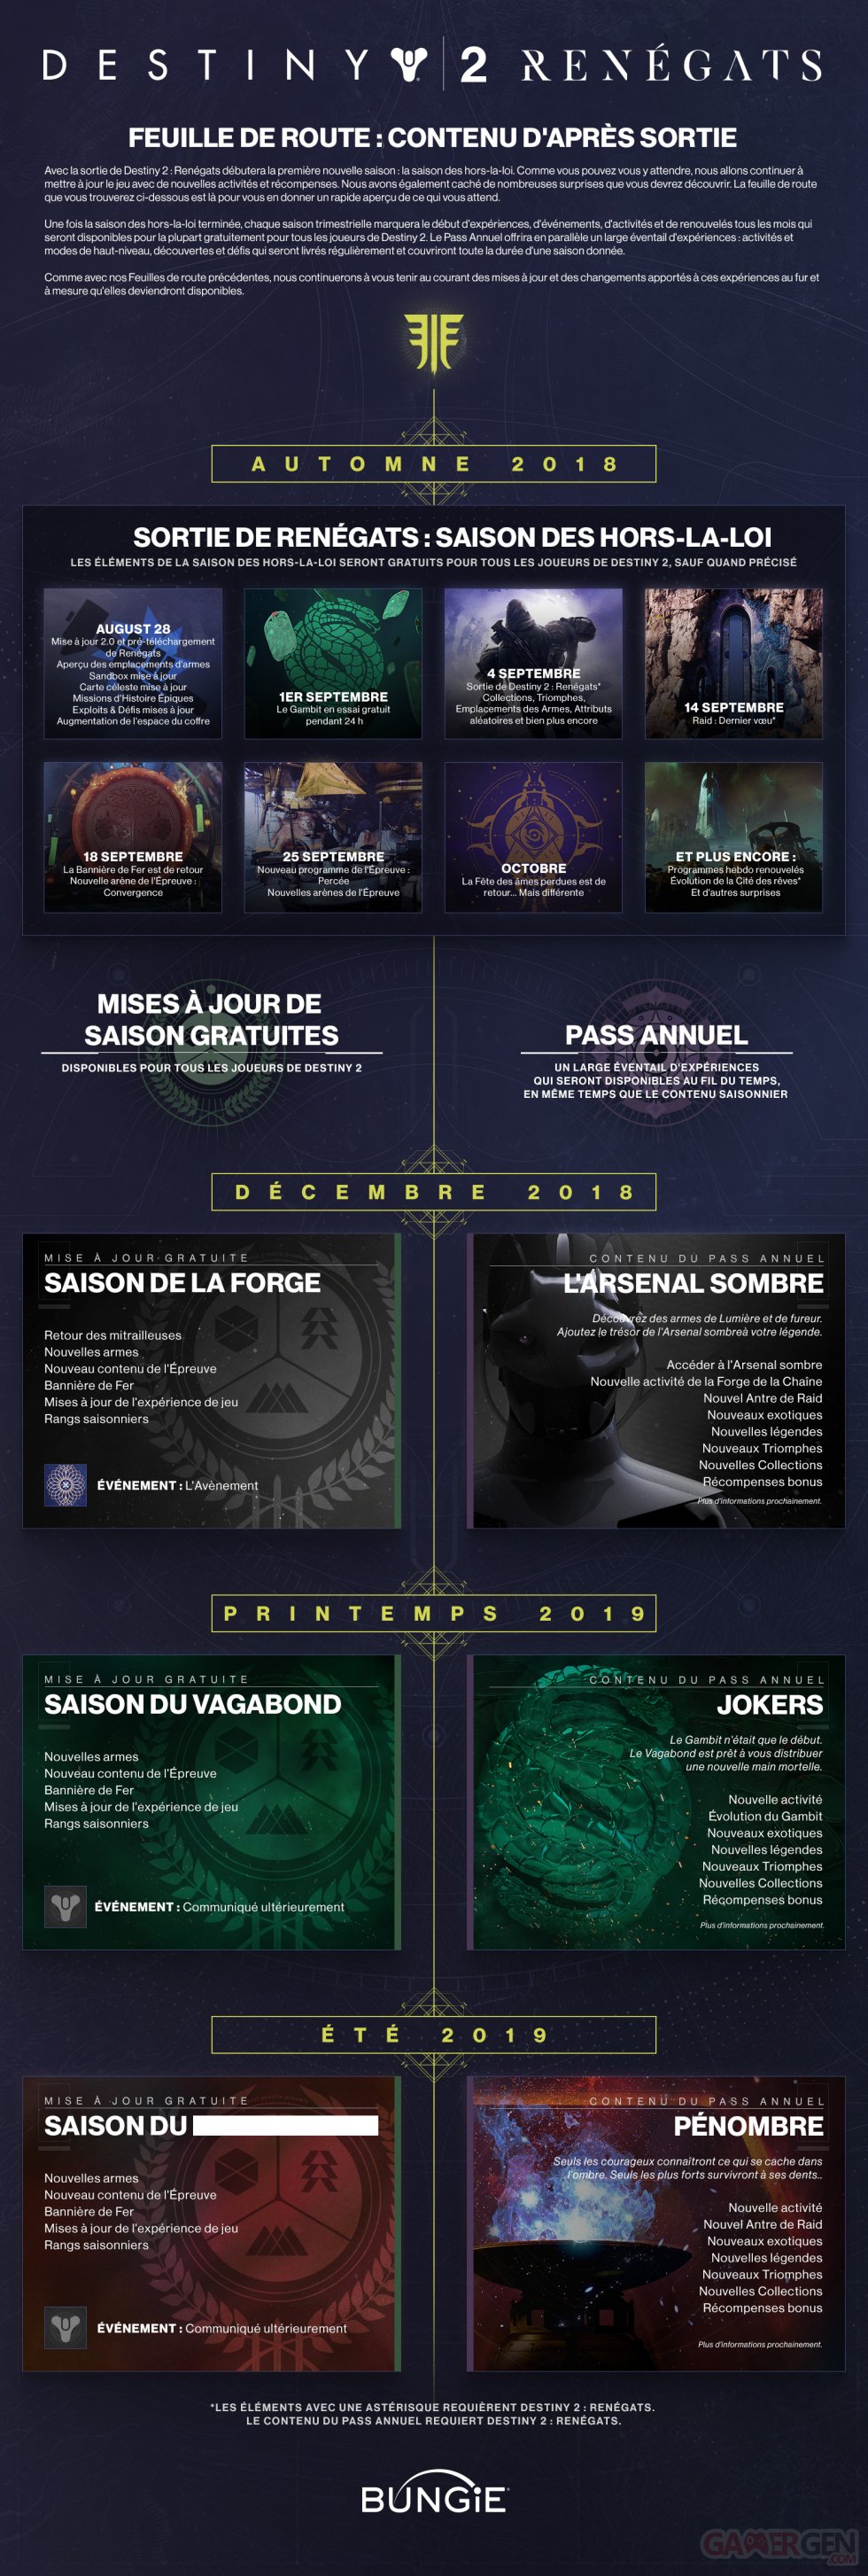 Destiny-2-Renégats-infographie-Année-2-contenu-post-lancement-28-08-2018